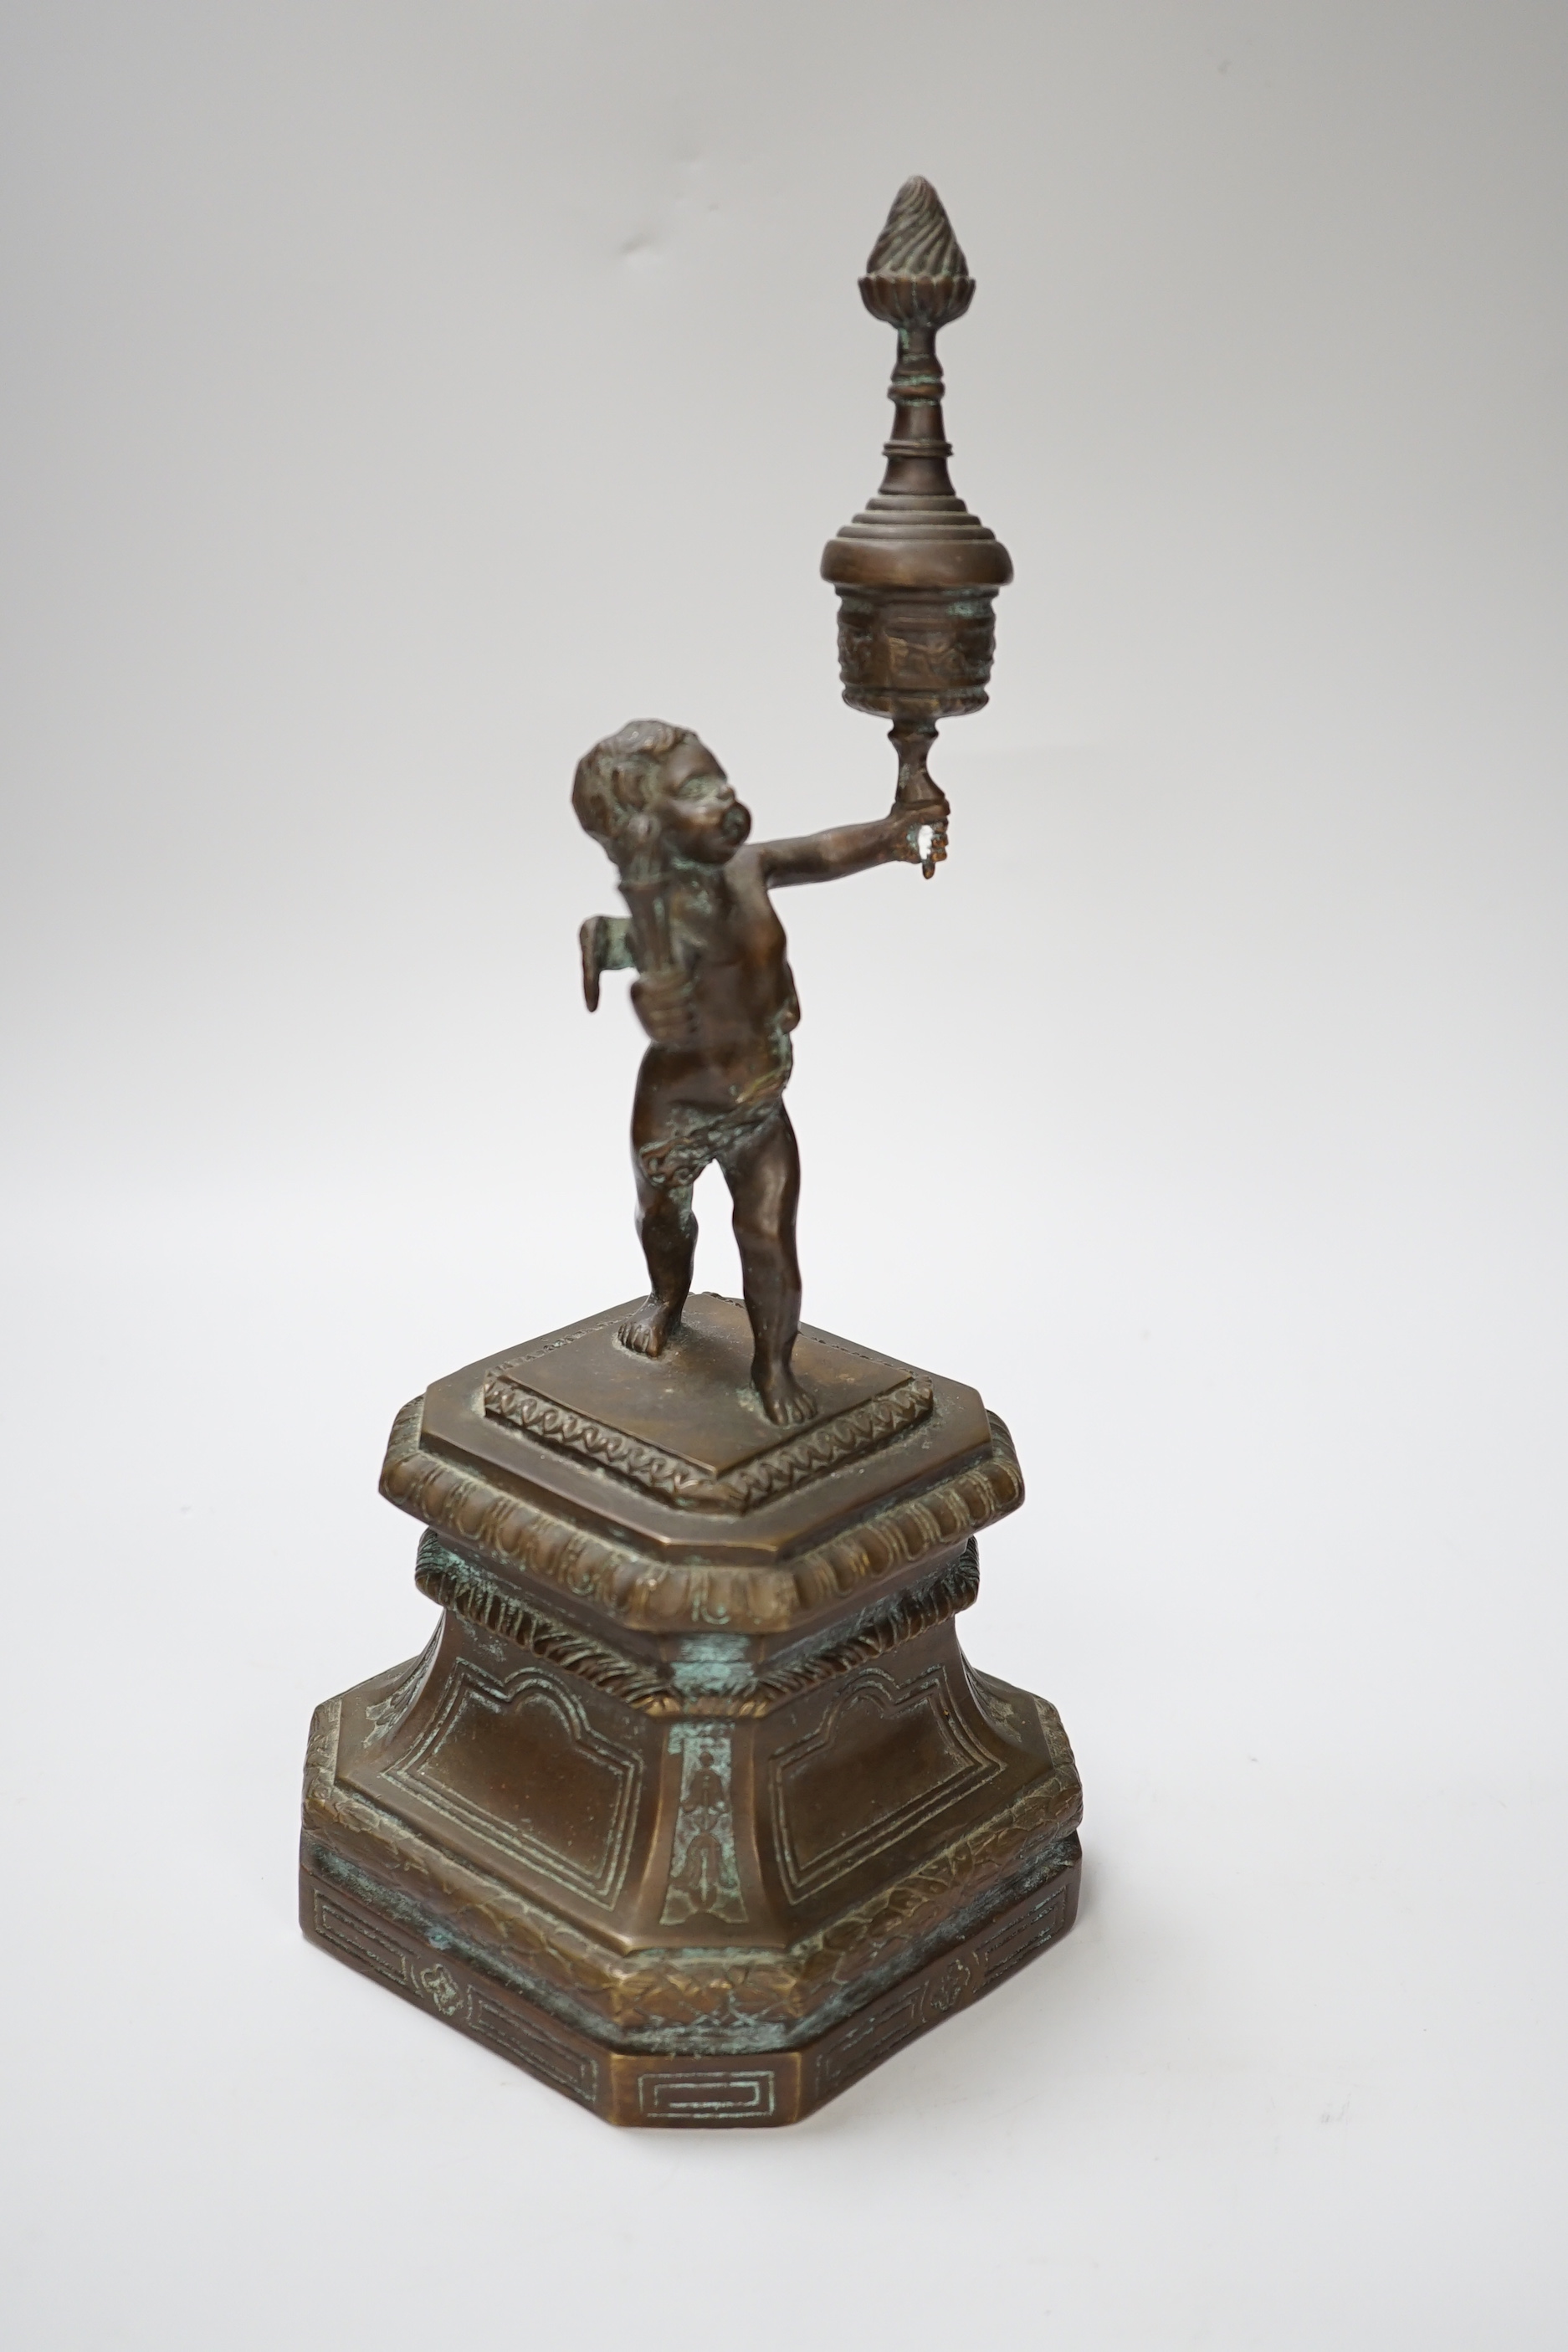 A bronze figure of a cherub, 30cm